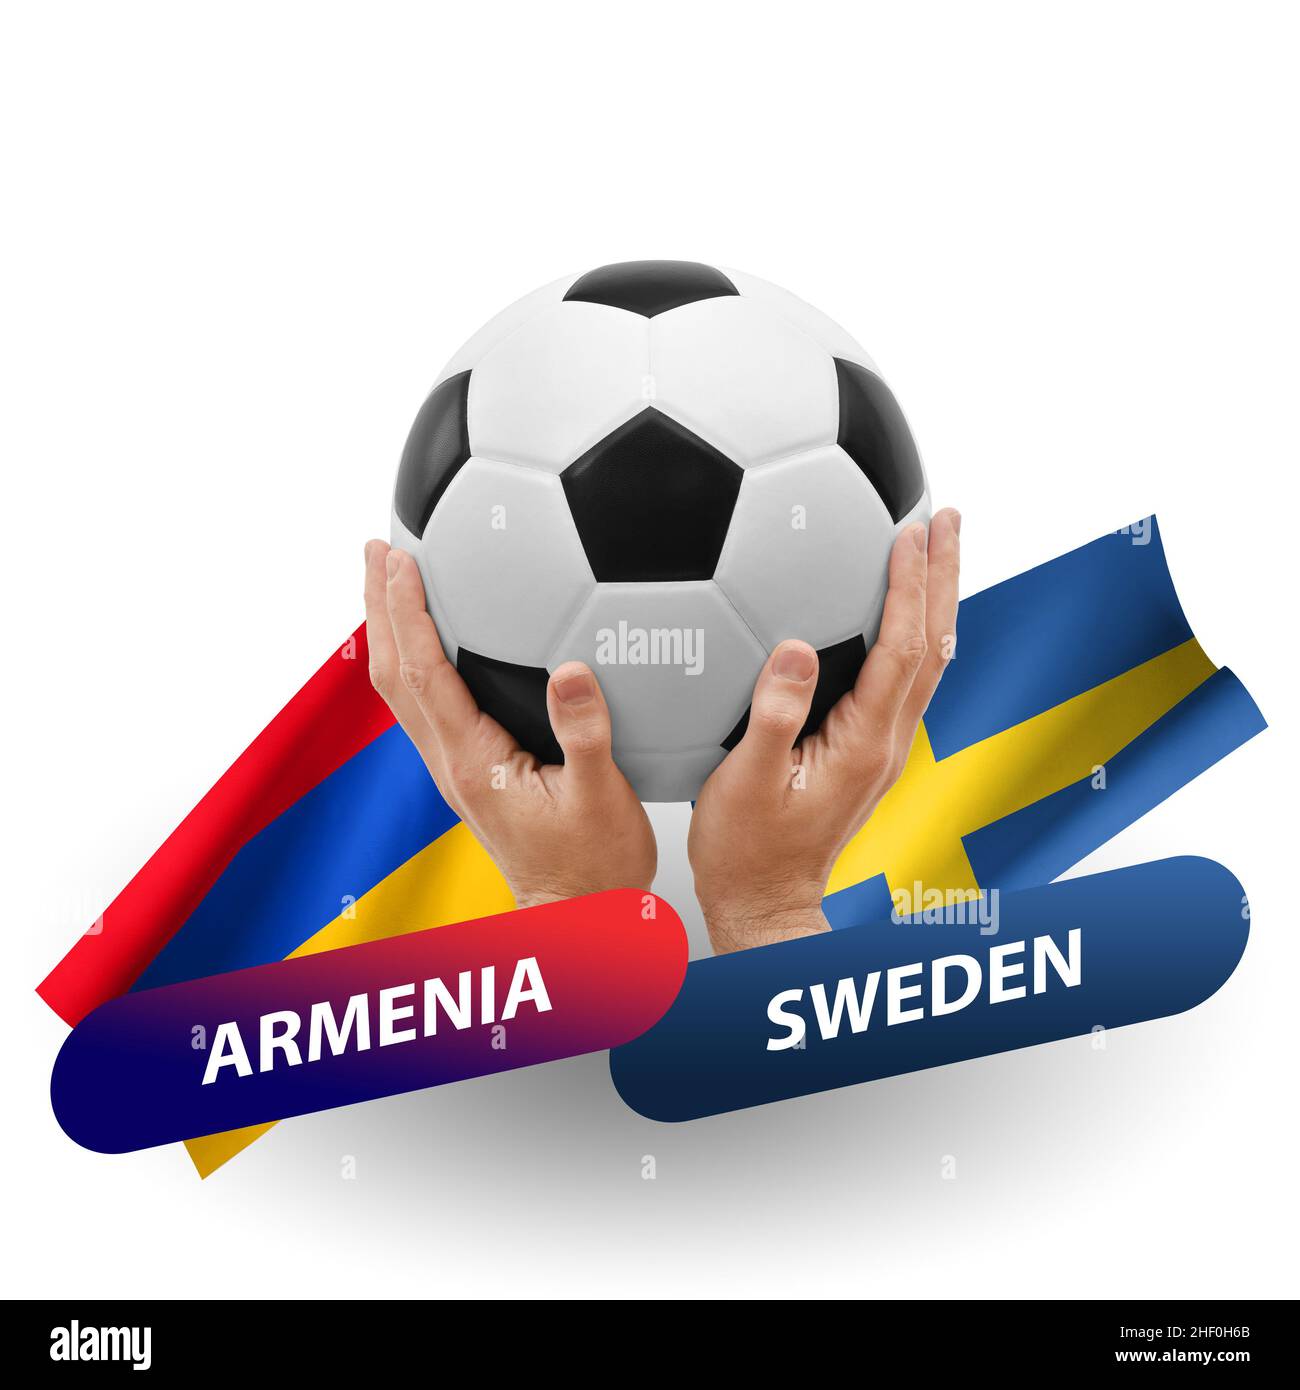 Sweden vs armenia